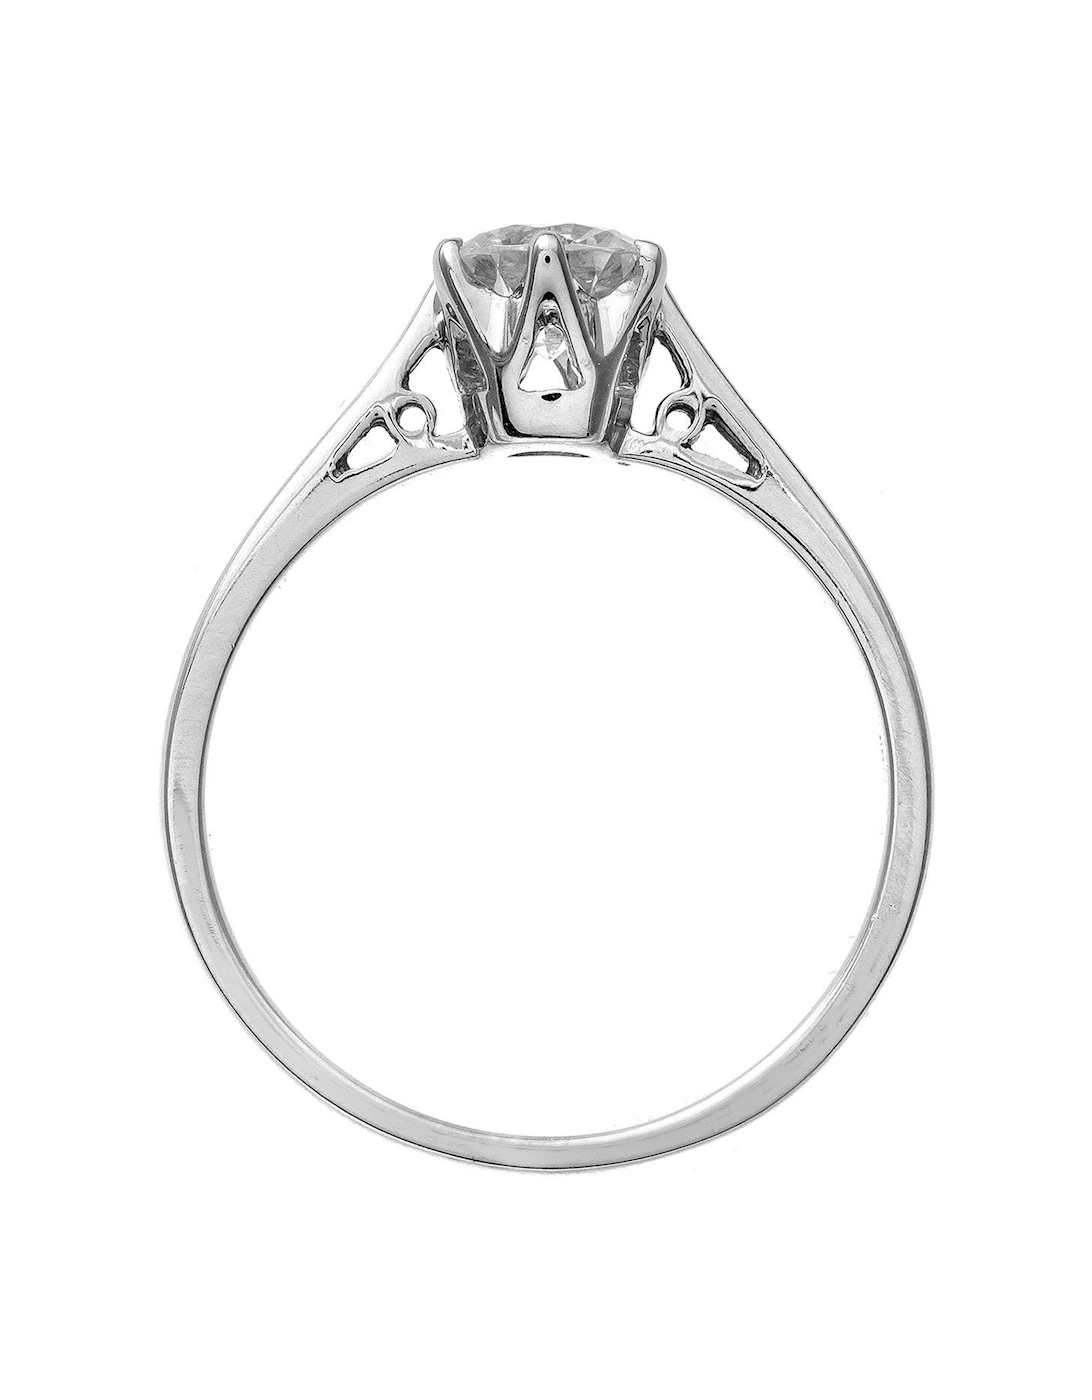 18 Carat White Gold 1 Carat Brilliant Cut Diamond Solitaire Ring